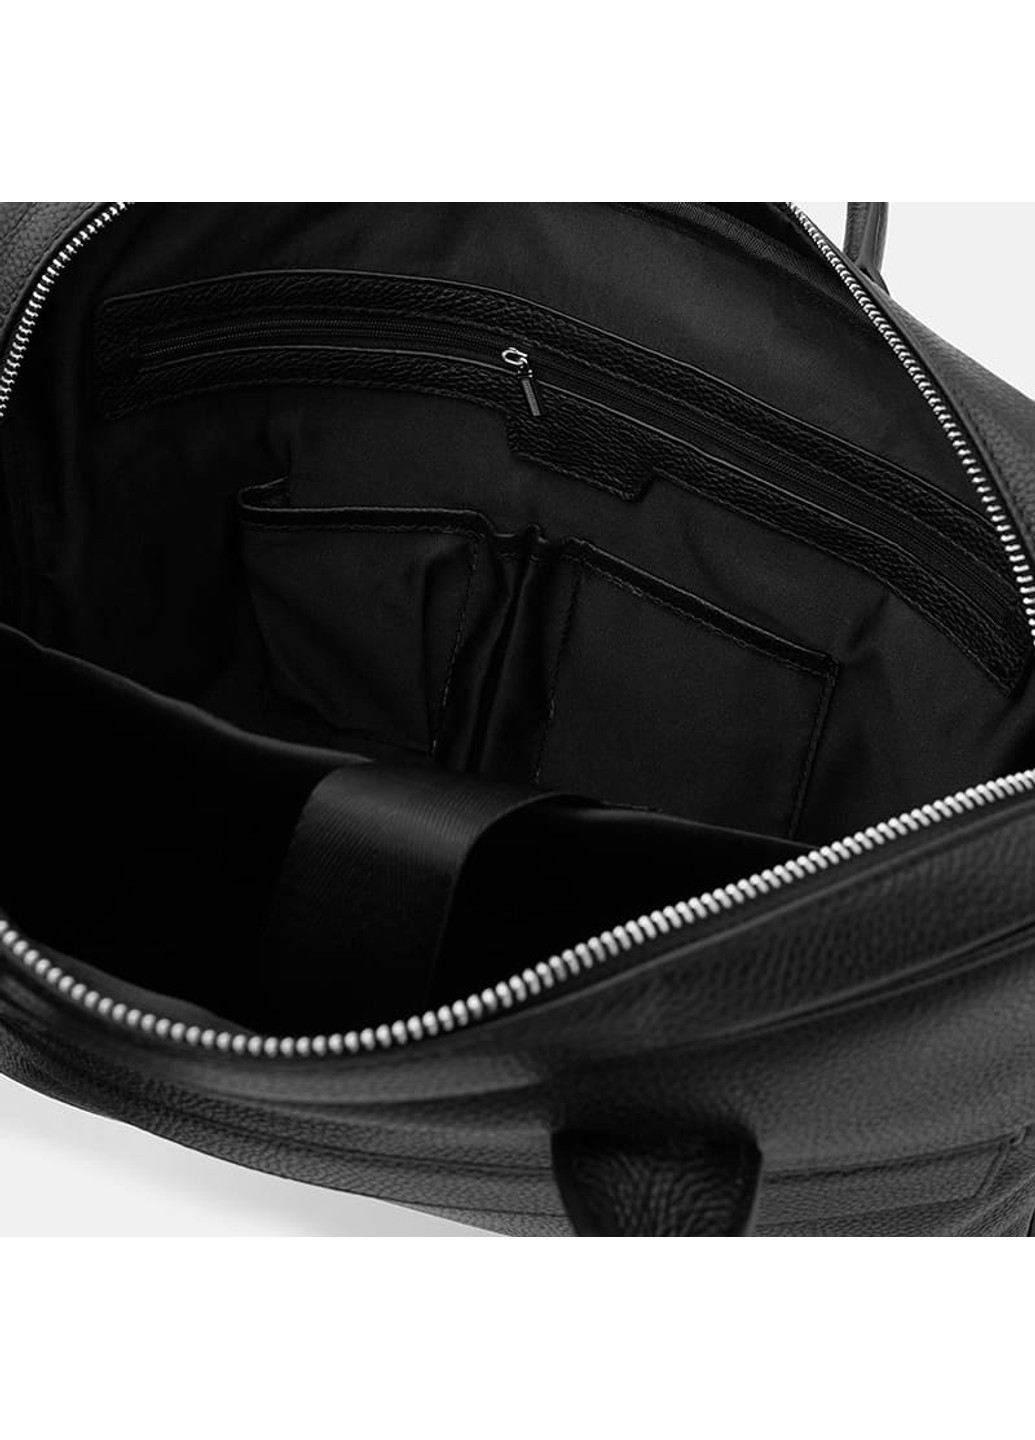 Мужская кожаная сумка K117611bl-black Borsa Leather (266143392)